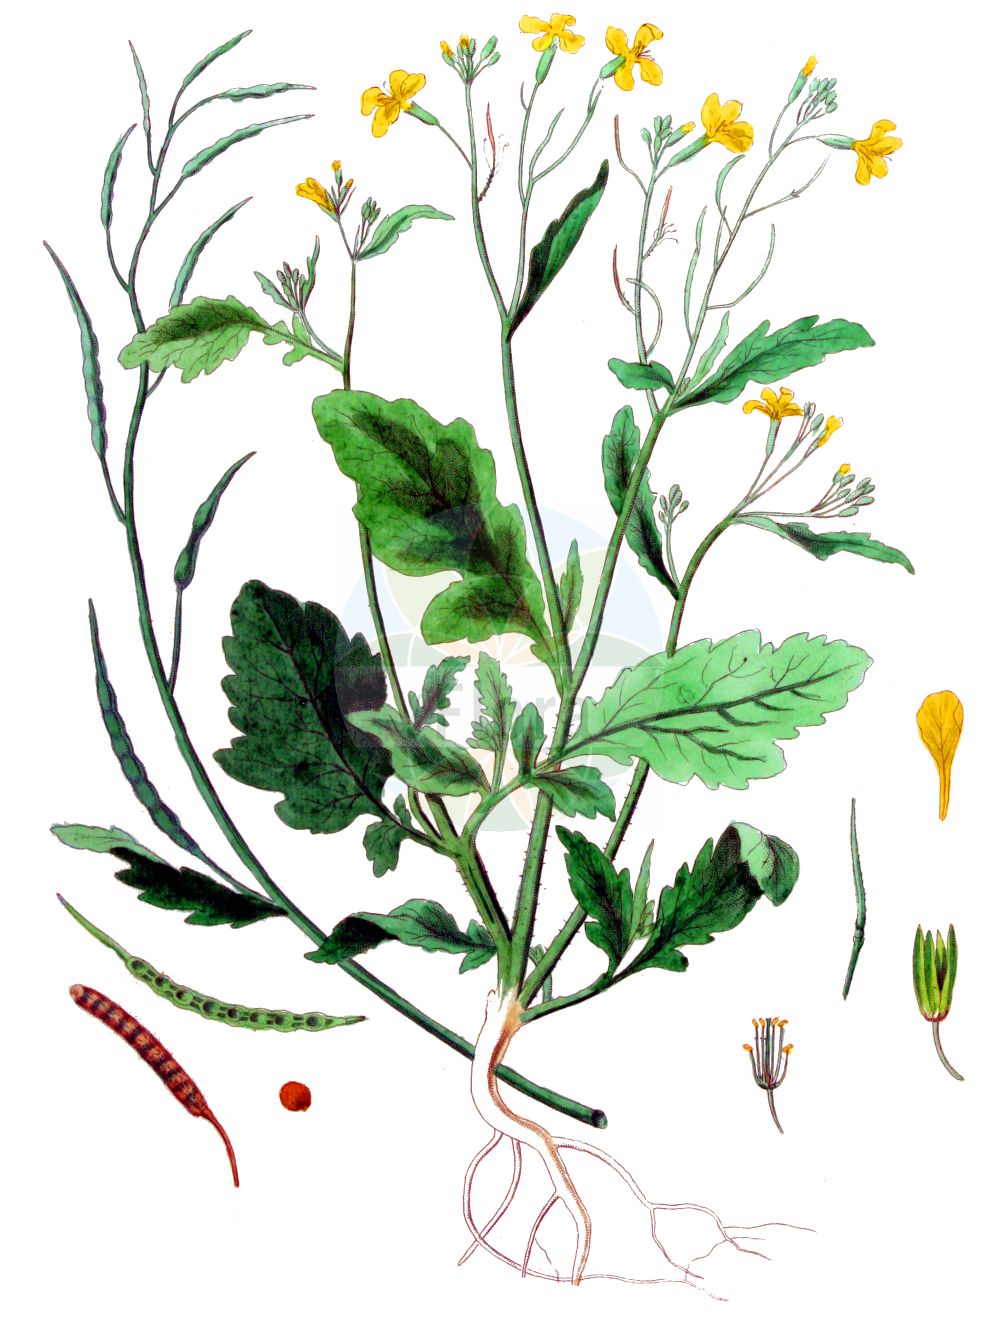 Historische Abbildung von Raphanus raphanistrum (Acker-Rettich - Jointed Charlock). Das Bild zeigt Blatt, Bluete, Frucht und Same. ---- Historical Drawing of Raphanus raphanistrum (Acker-Rettich - Jointed Charlock). The image is showing leaf, flower, fruit and seed.(Raphanus raphanistrum,Acker-Rettich,Jointed Charlock,Raphanistrum arvense,Raphanus raphanistrum,Raphanus sylvestris,Acker-Rettich,Hederich,Jointed Charlock,Runch,Wild Radish,Raphanus,Hederich,Radish,Brassicaceae,Kreuzblütler,Cabbage family,Blatt,Bluete,Frucht,Same,leaf,flower,fruit,seed,Kops (1800-1934))